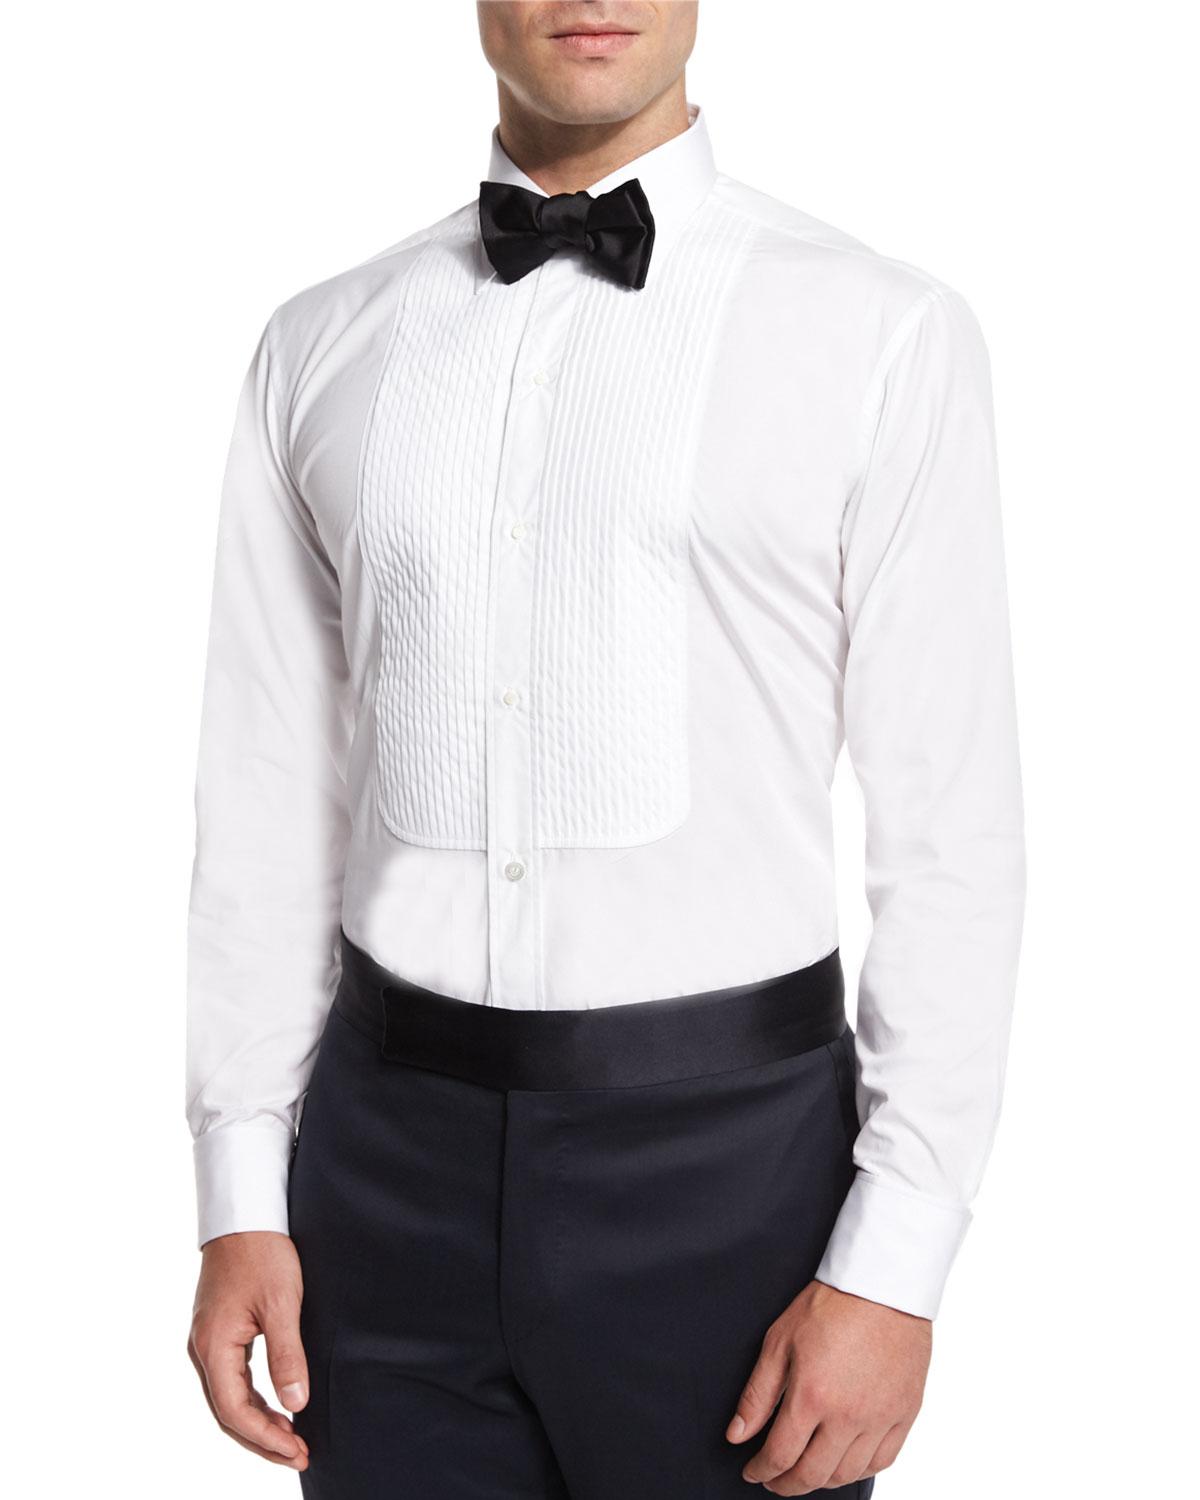 Charvet Silk Bow Tie in Black for Men - Lyst